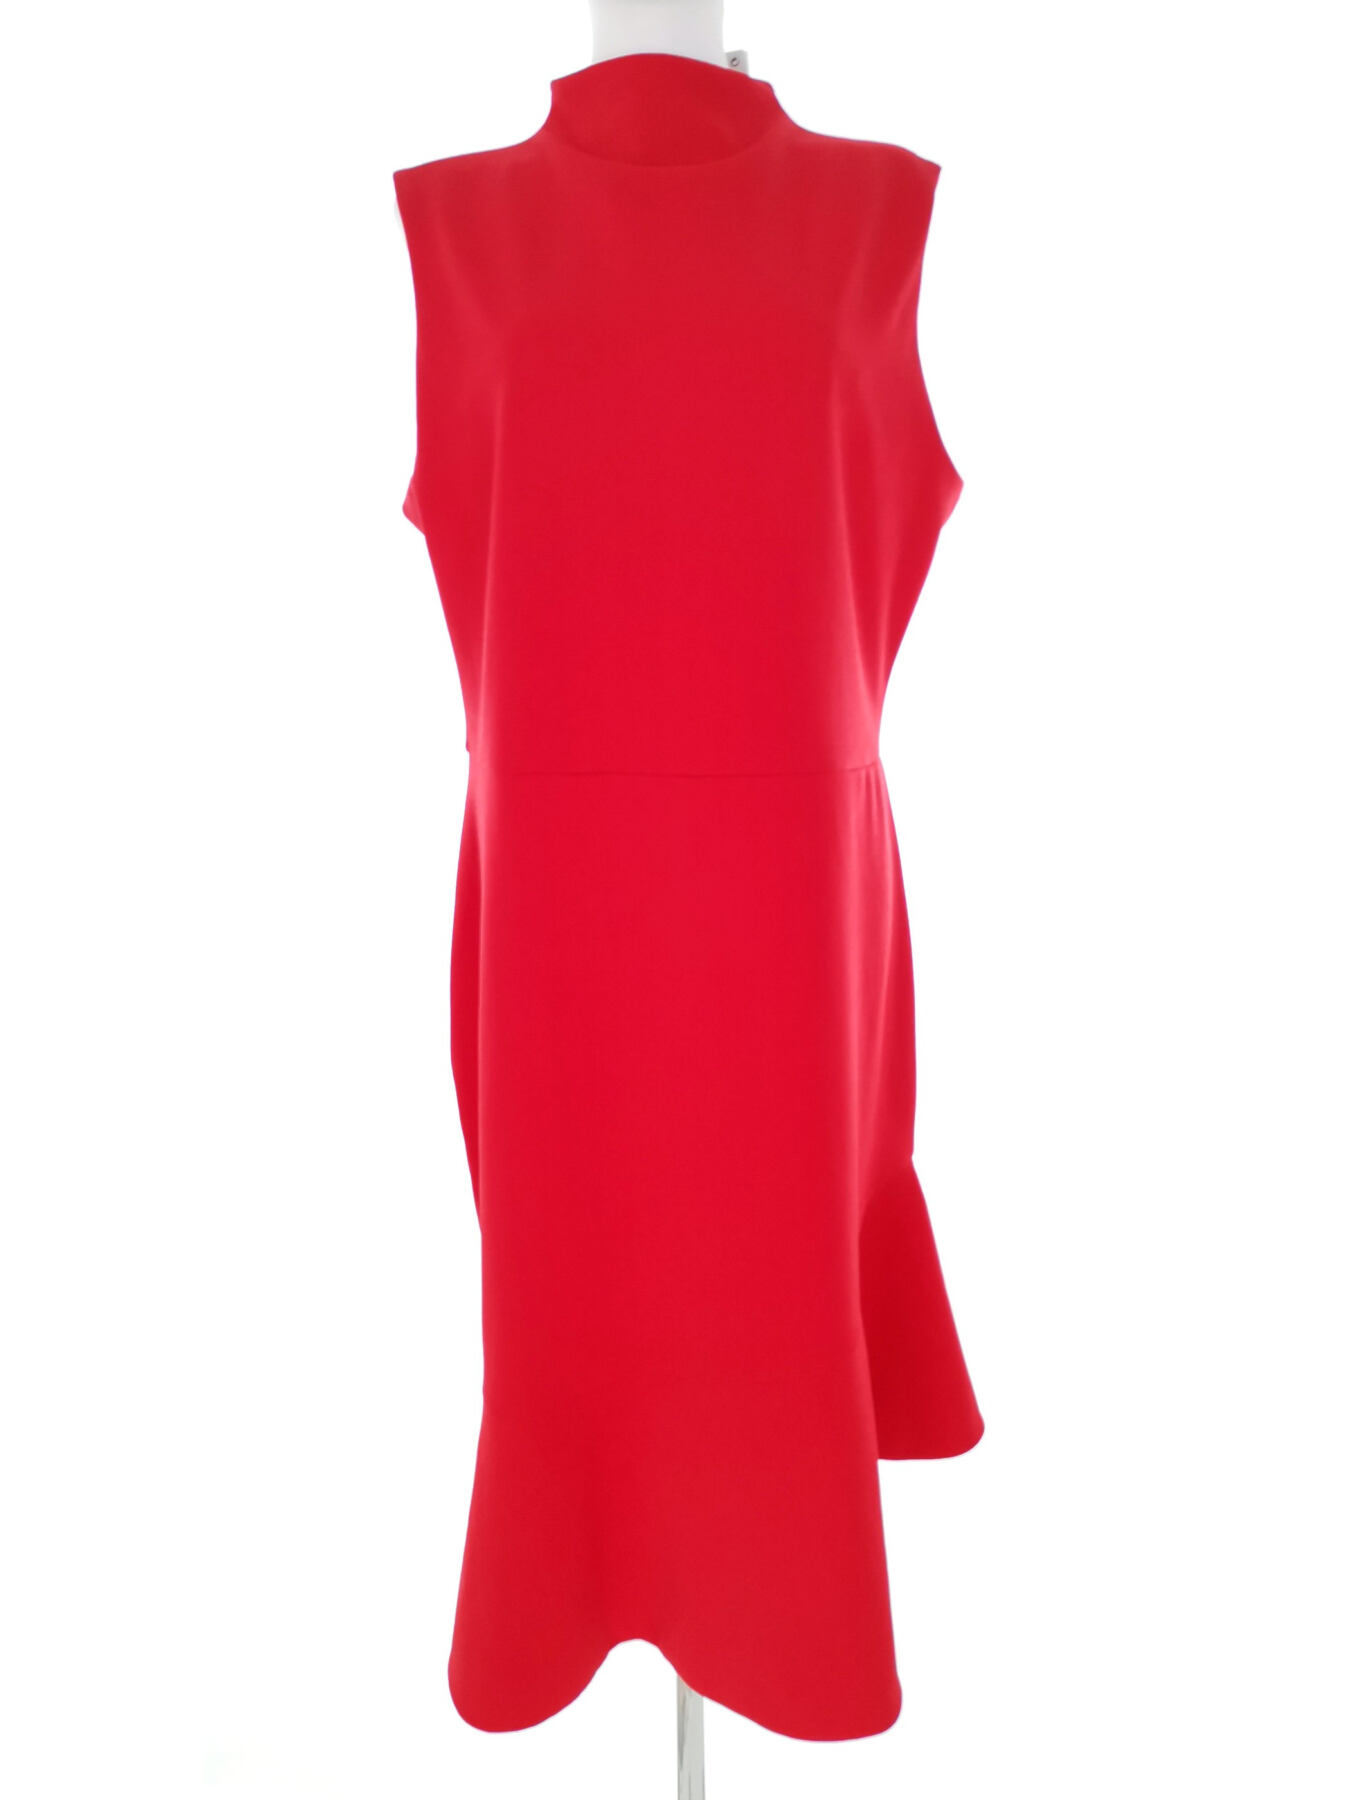 Next Rozmiar 16 (44) Kolor Czerwony Pół golf Sukienka Ołówkowa Bezrękawnik Midi